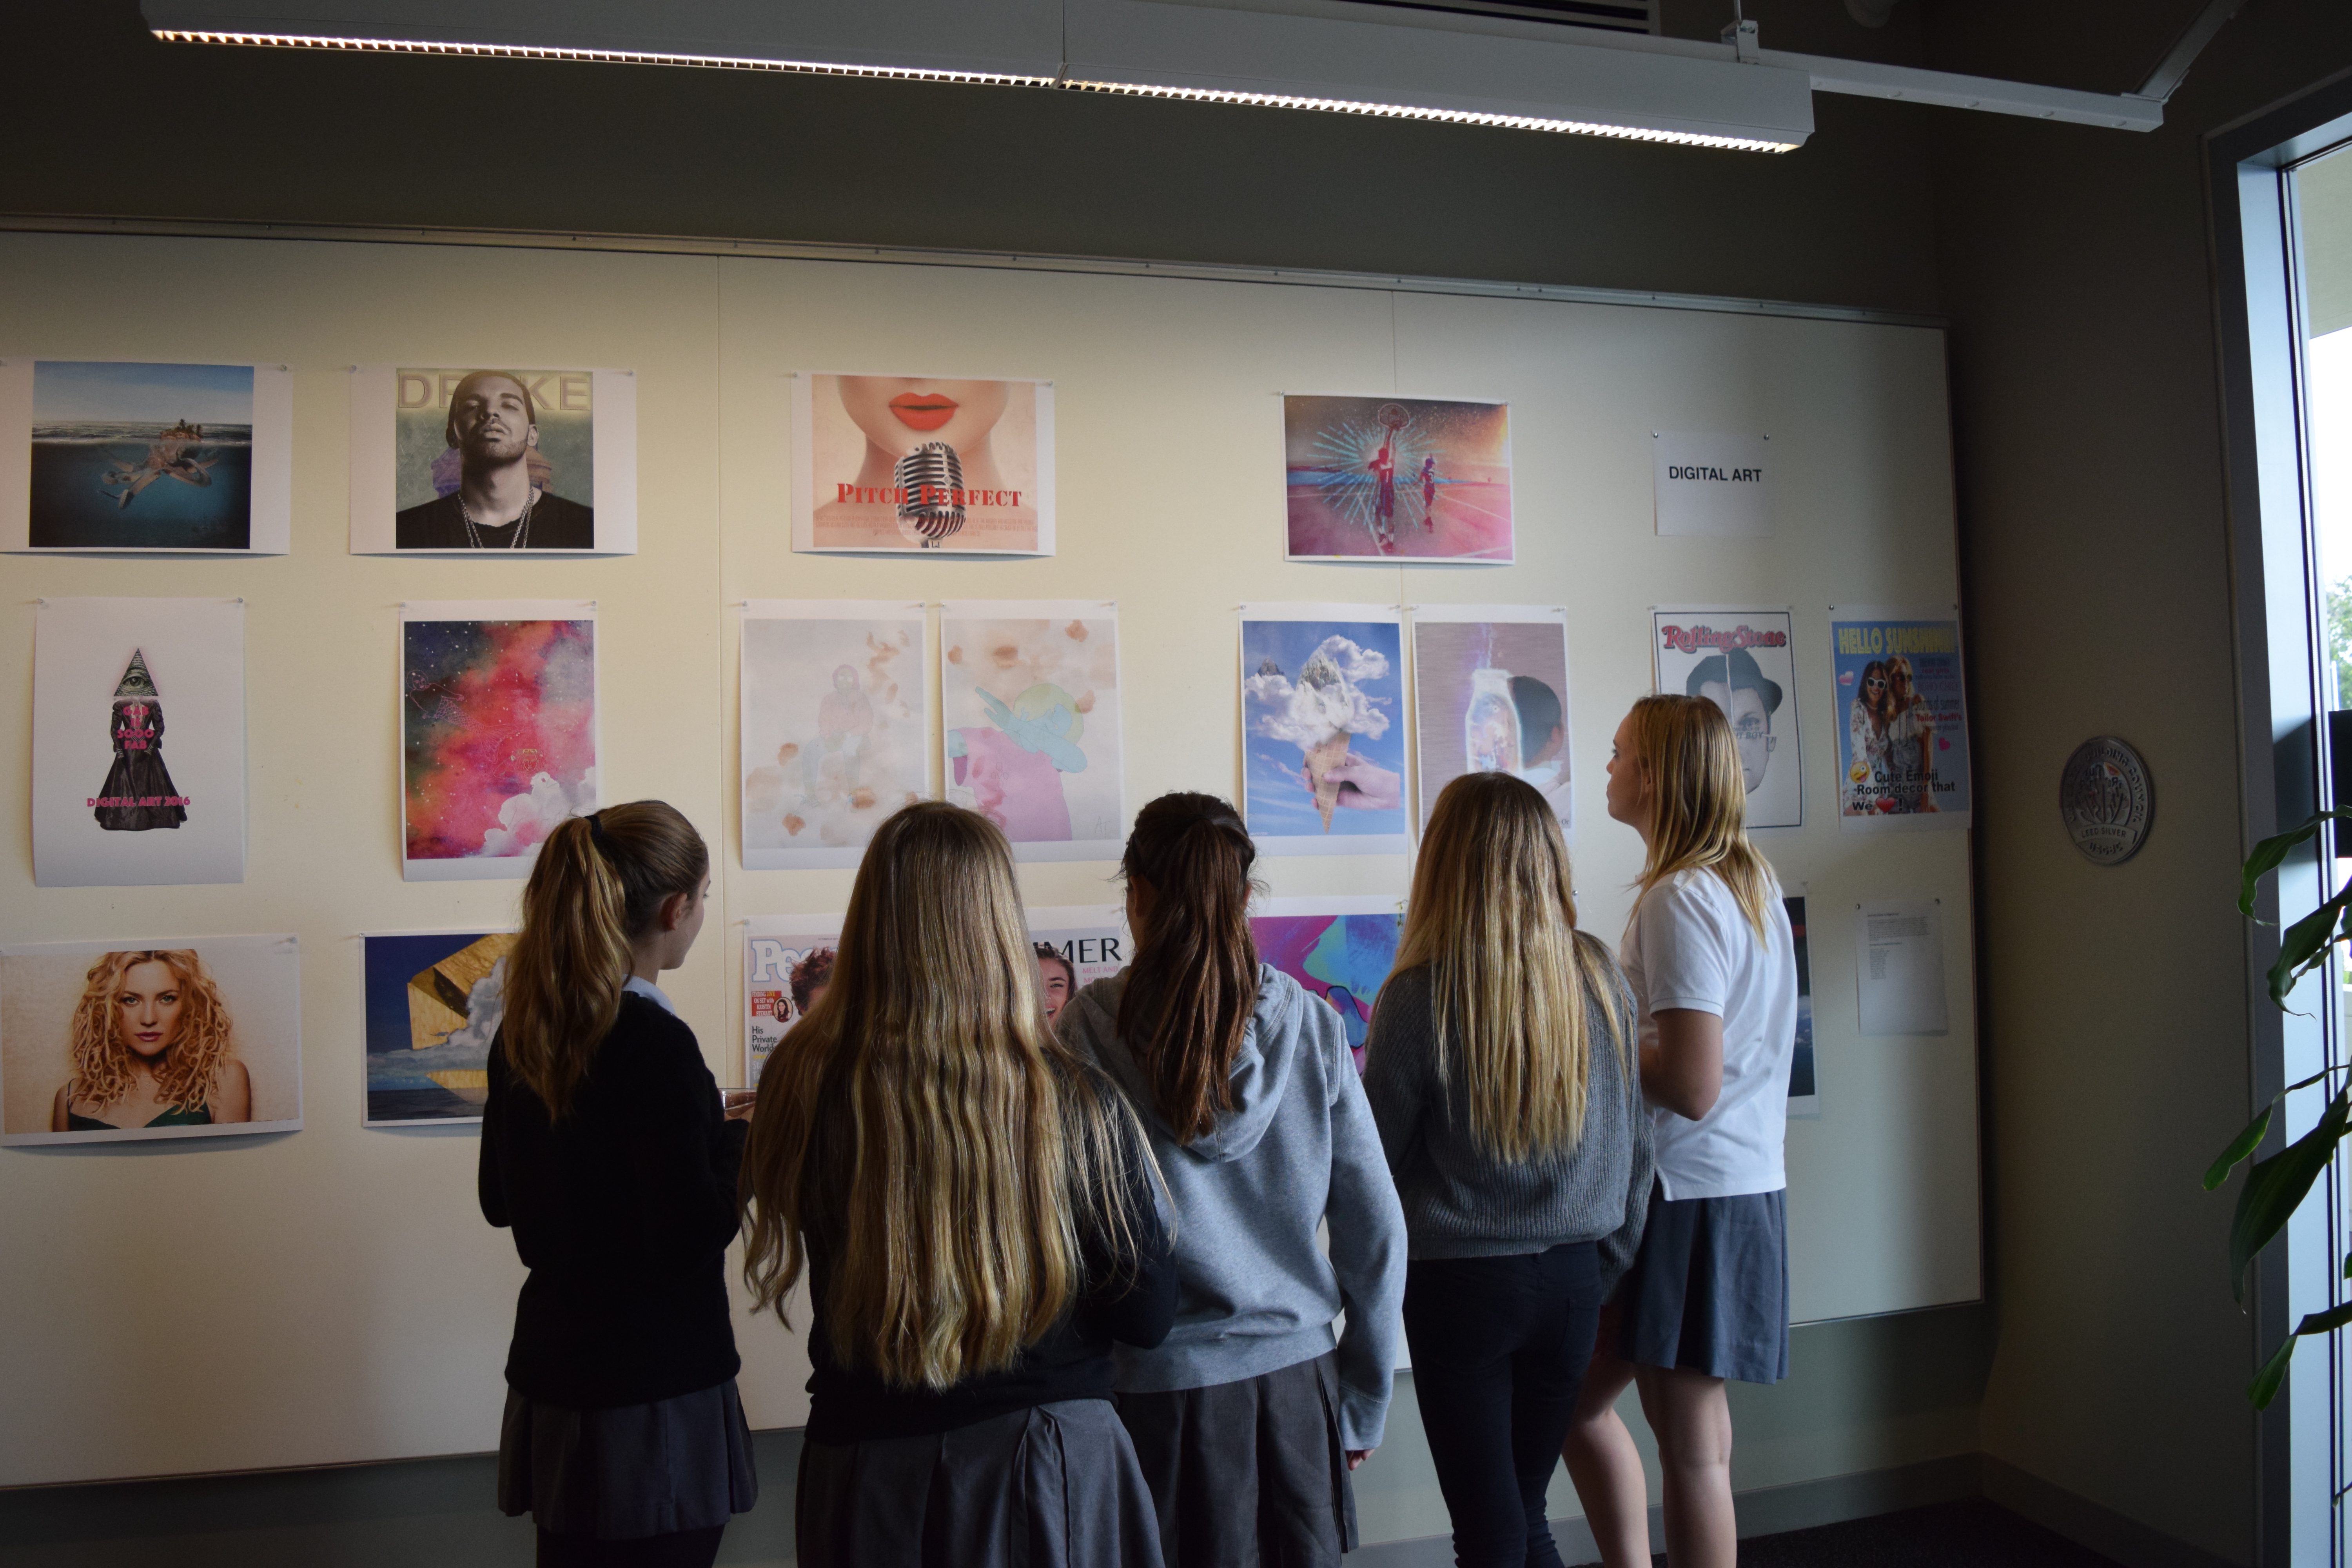 Students admire digital art.